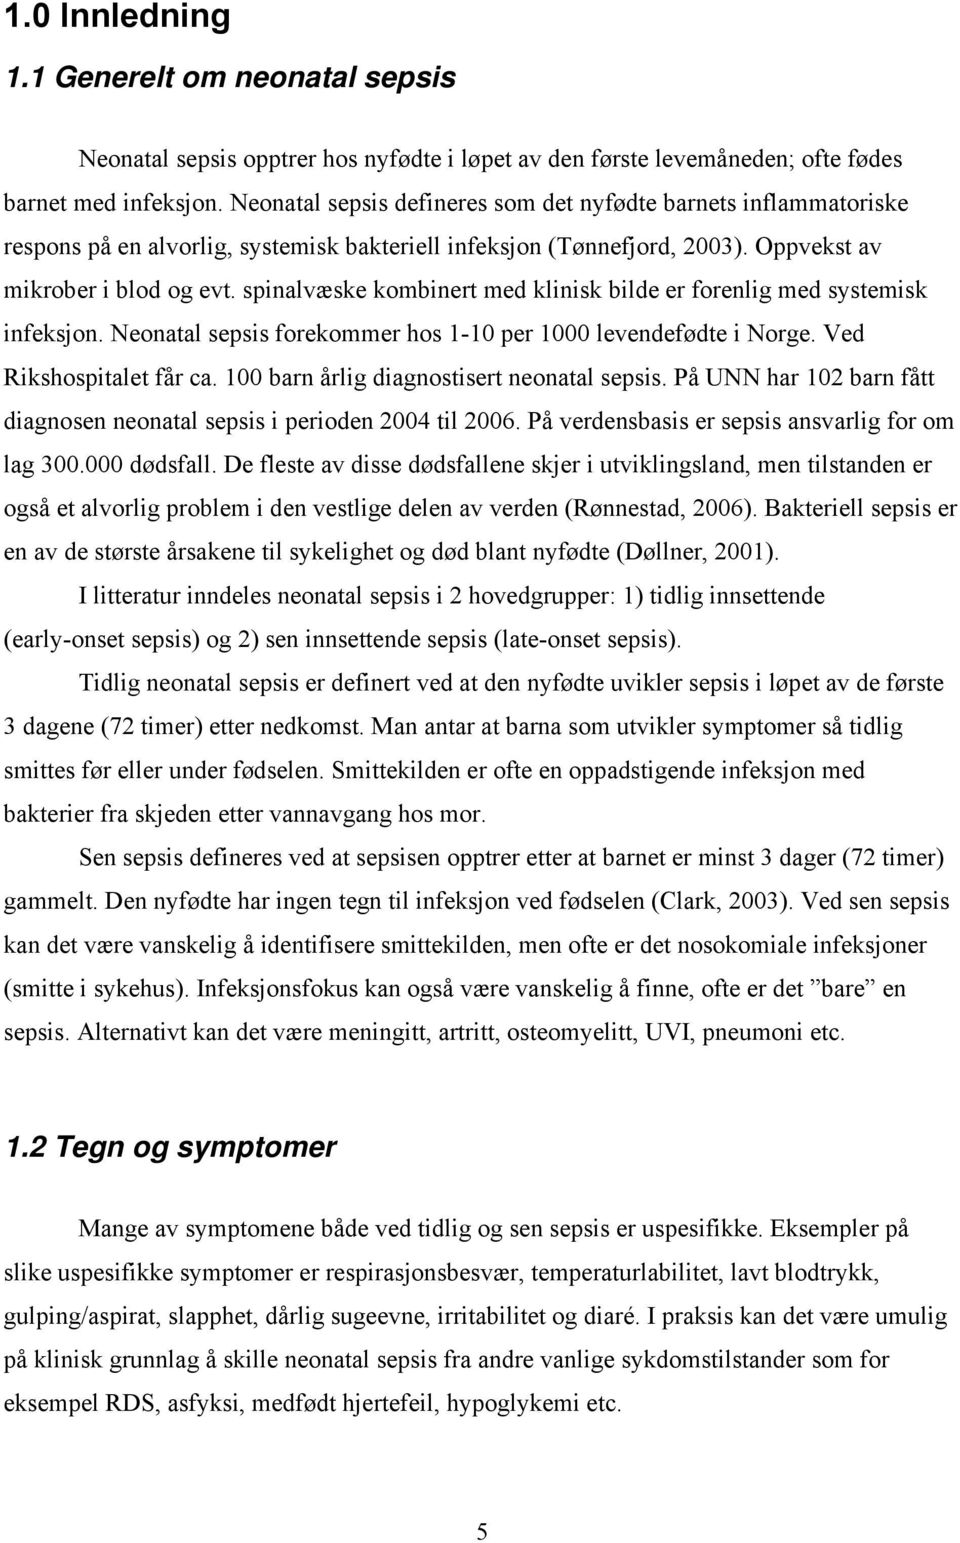 spinalvæske kombinert med klinisk bilde er forenlig med systemisk infeksjon. Neonatal sepsis forekommer hos 1-10 per 1000 levendefødte i Norge. Ved Rikshospitalet får ca.